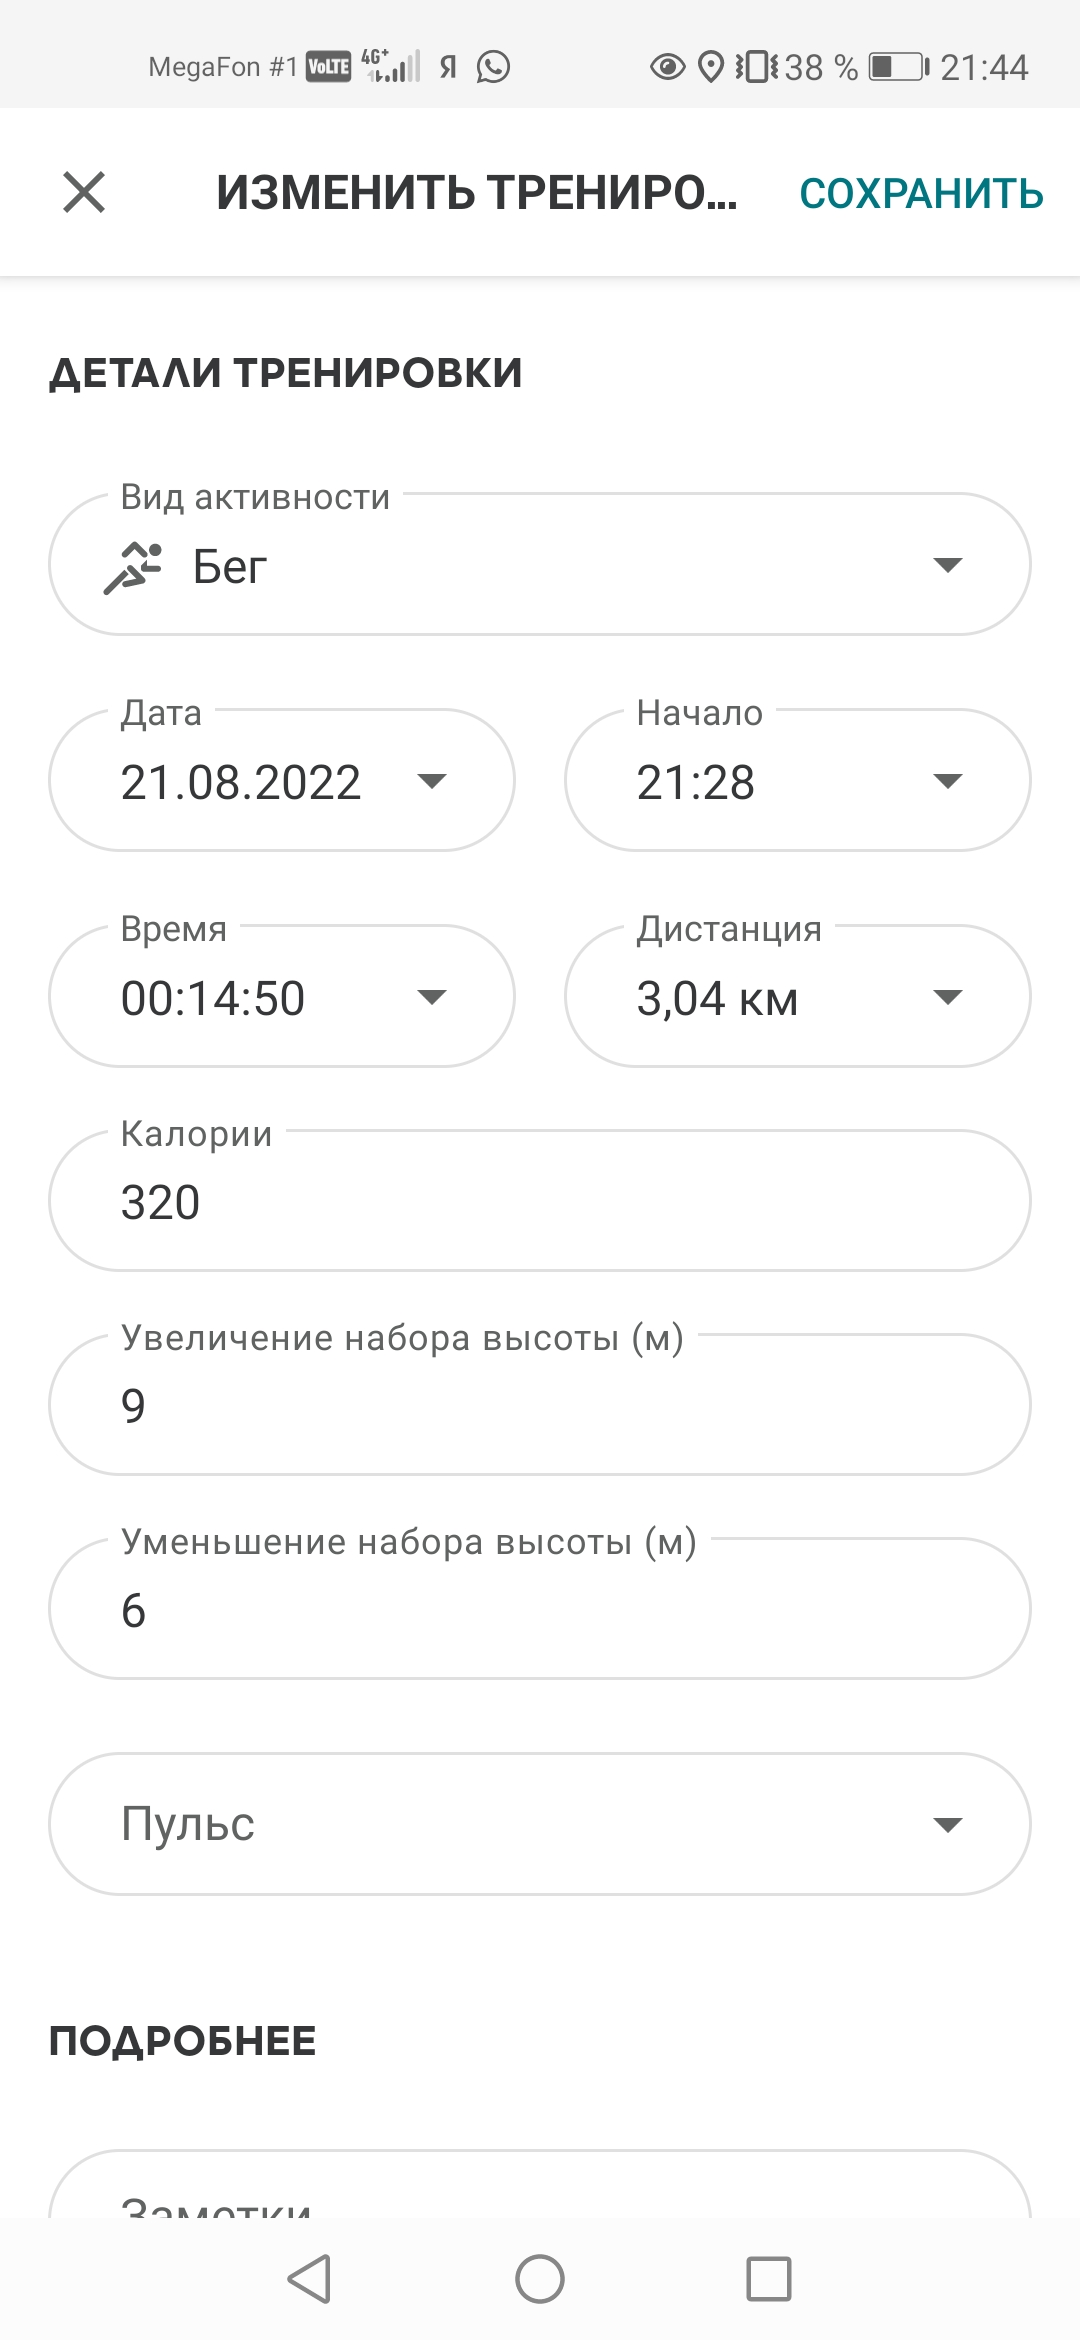  Загрузка от 21.08.2022 00:00:00 Максимов Сергей 